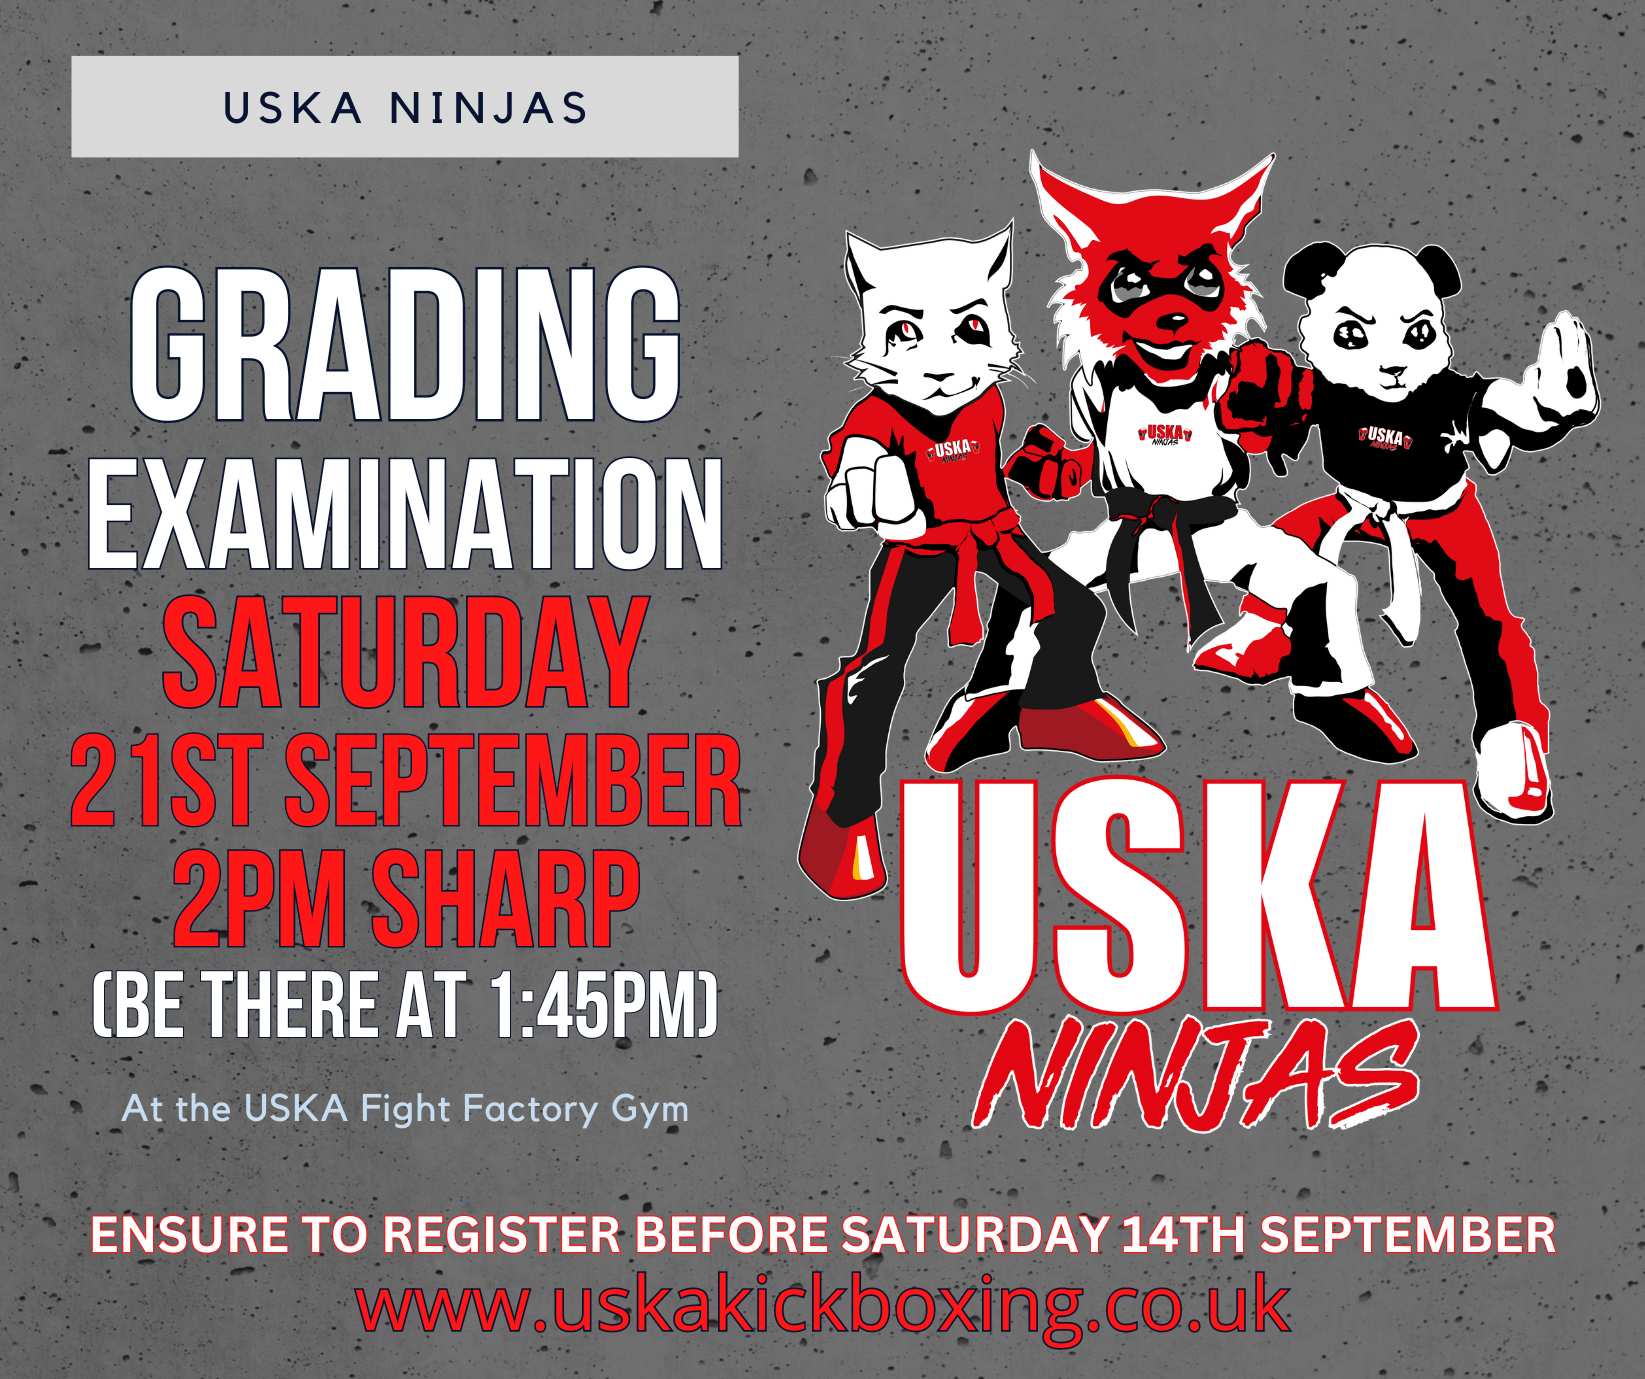 USKA Ninjas September Grading